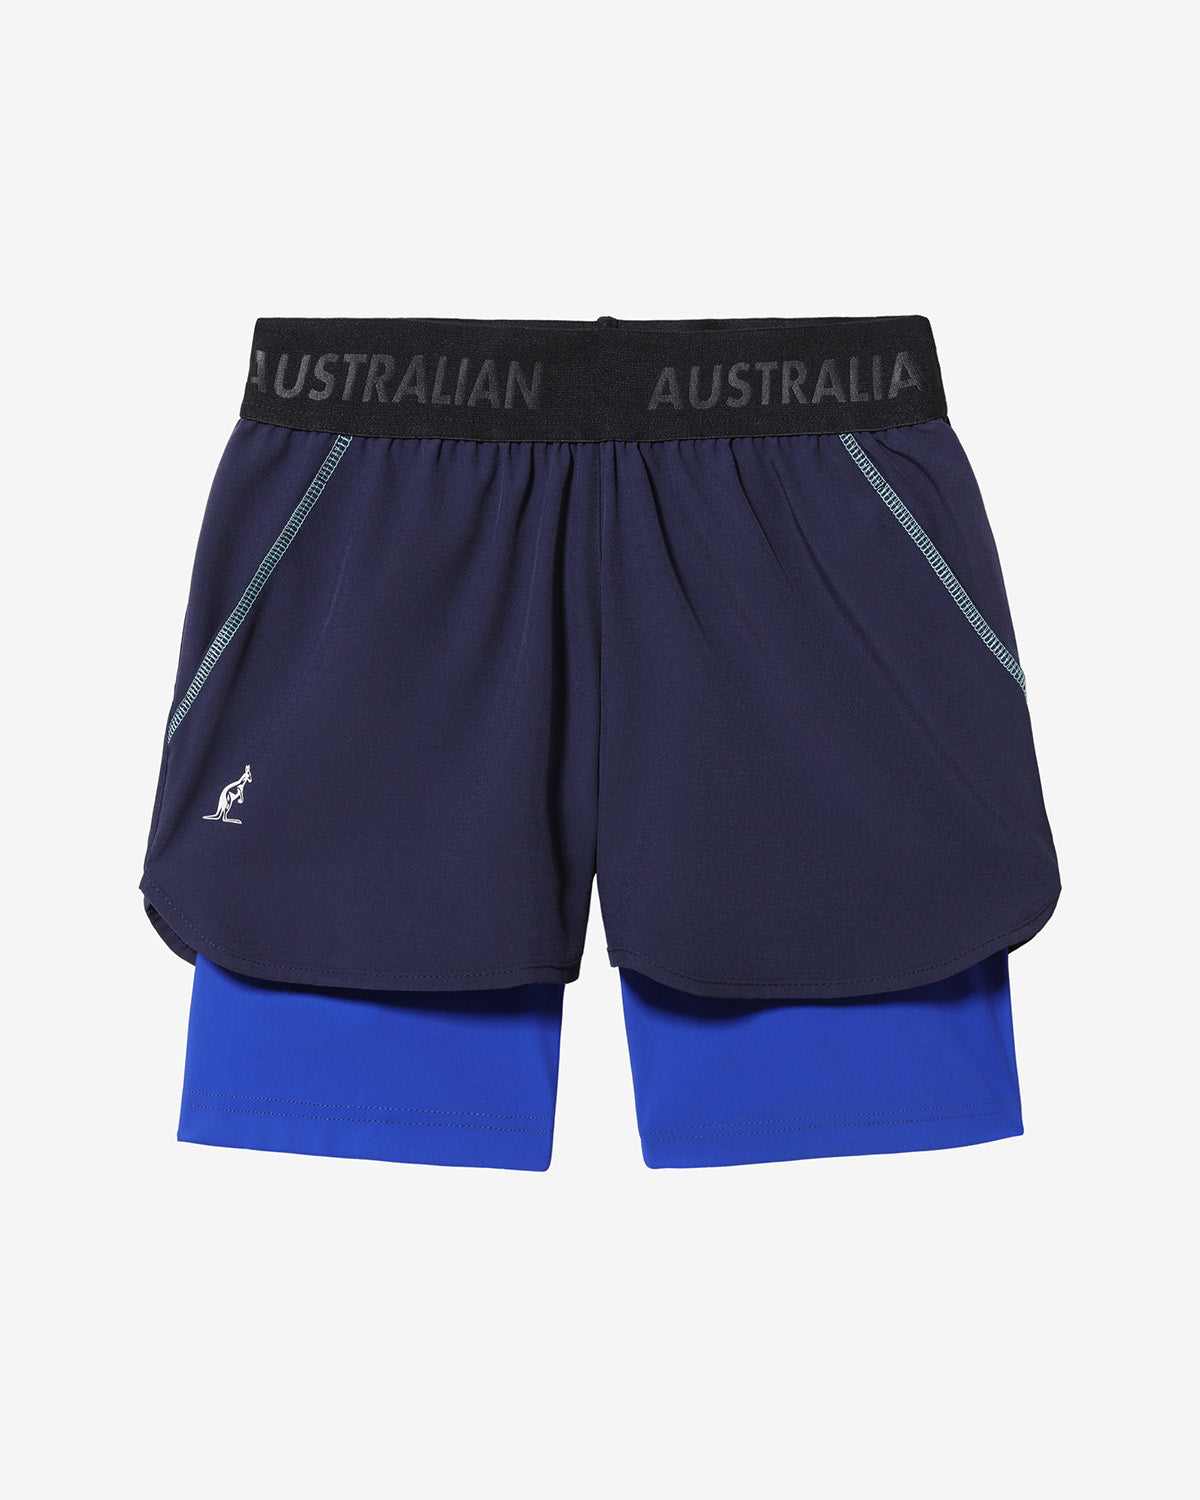 Match Shorts: Australian Tennis